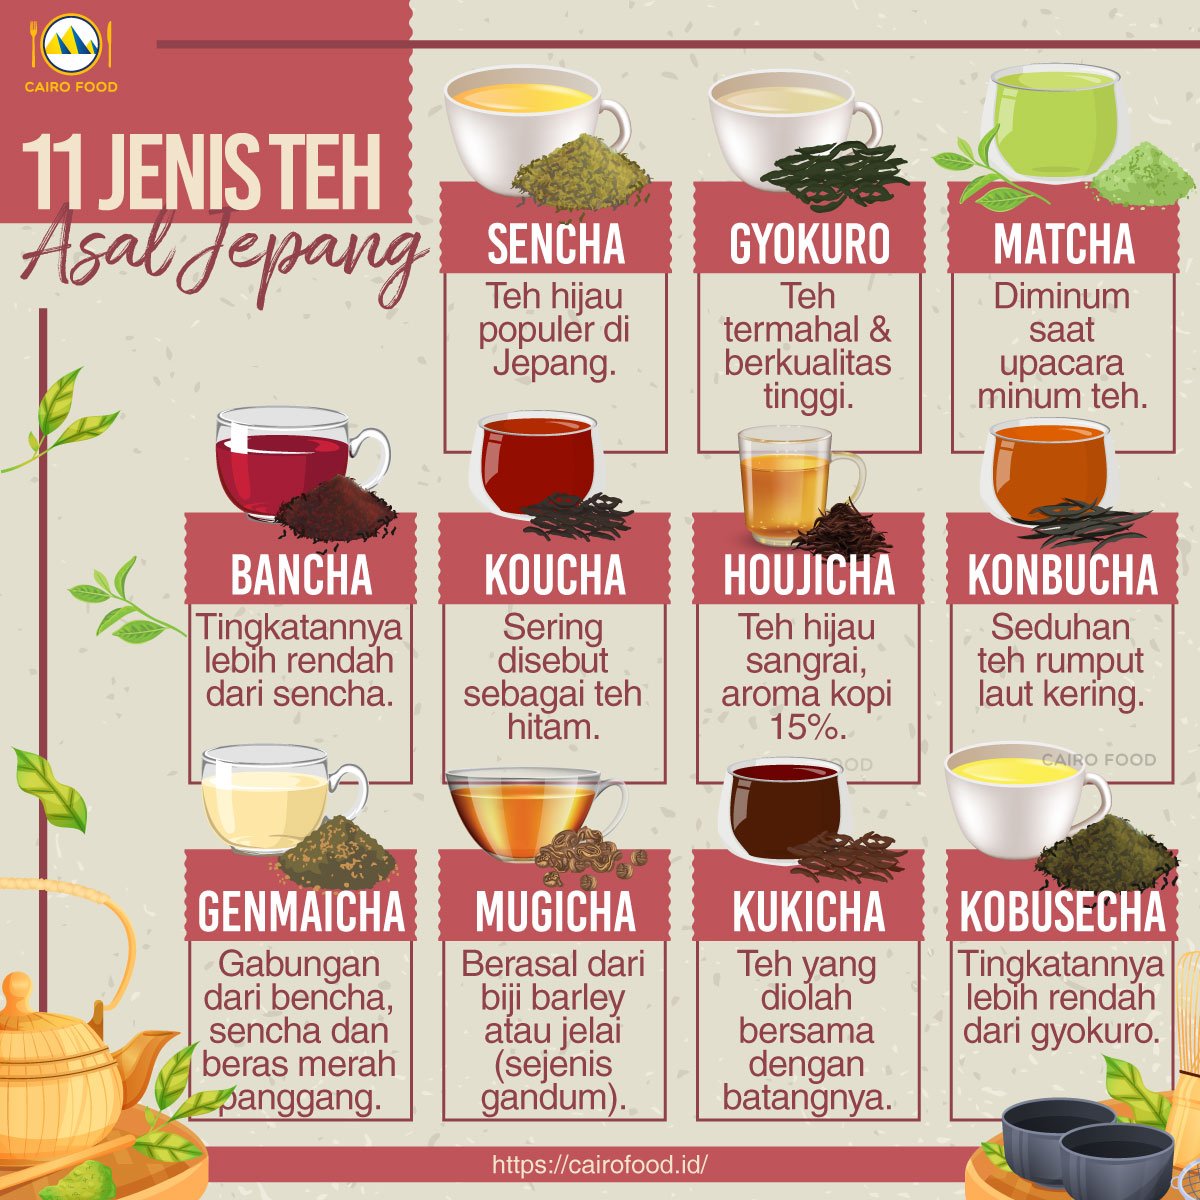 11 jenis teh asal jepang yang baik untuk kesehatan